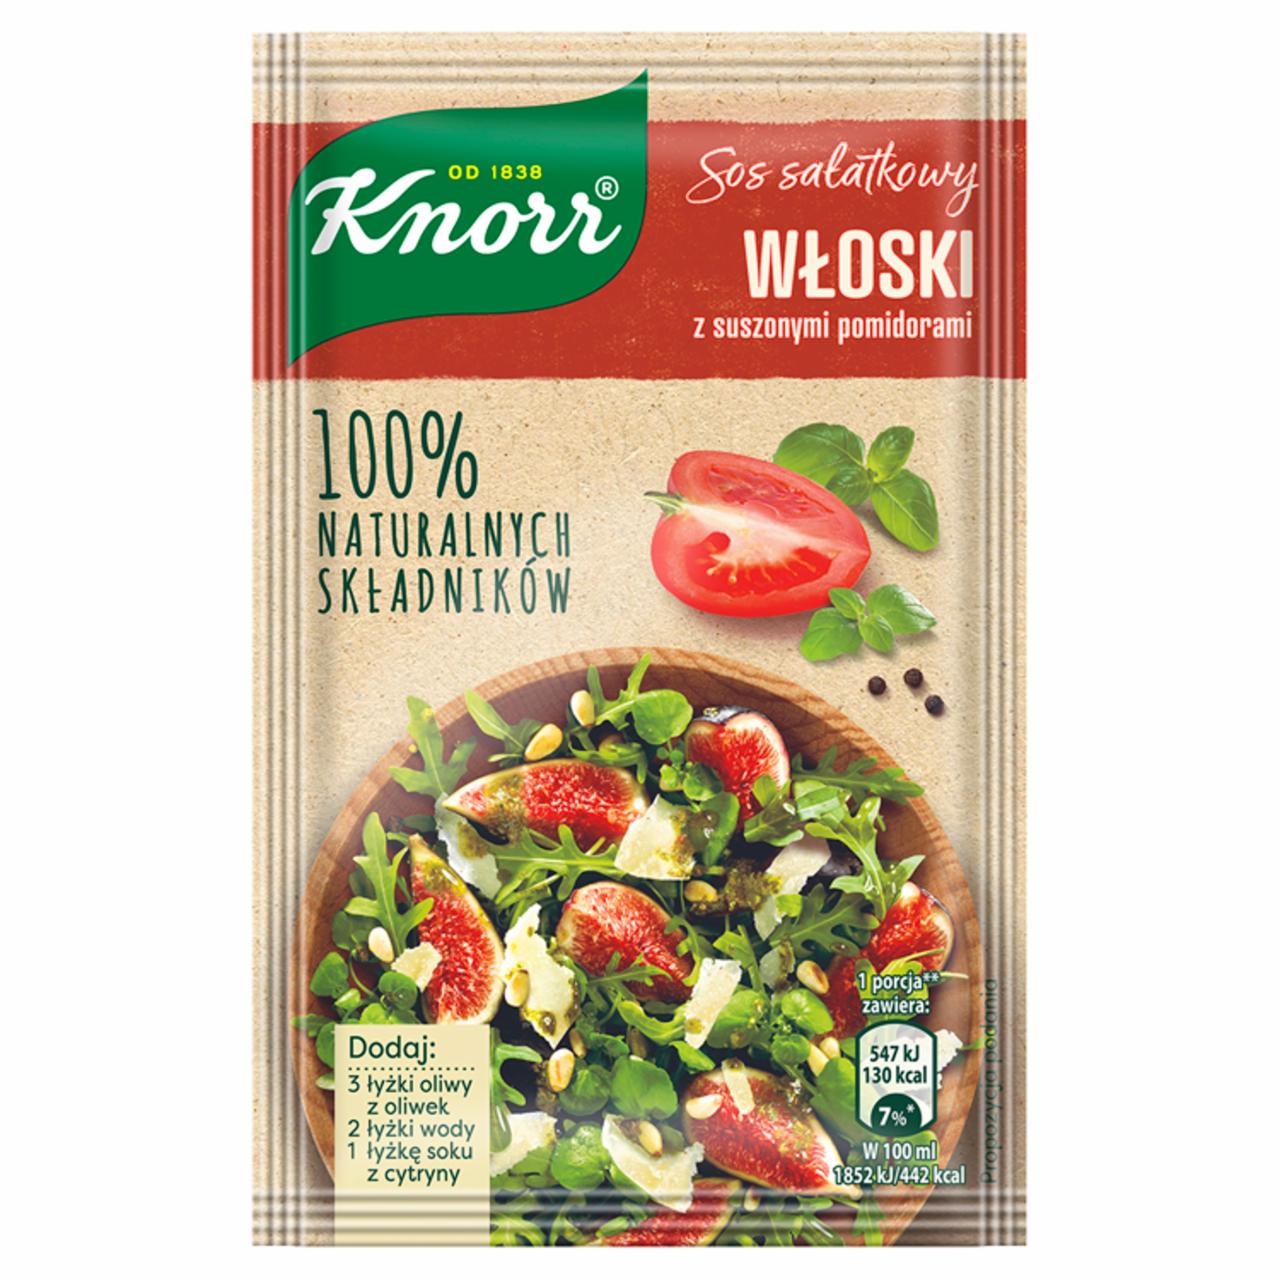 Zdjęcia - Knorr Sos sałatkowy włoski z suszonymi pomidorami 8,2 g